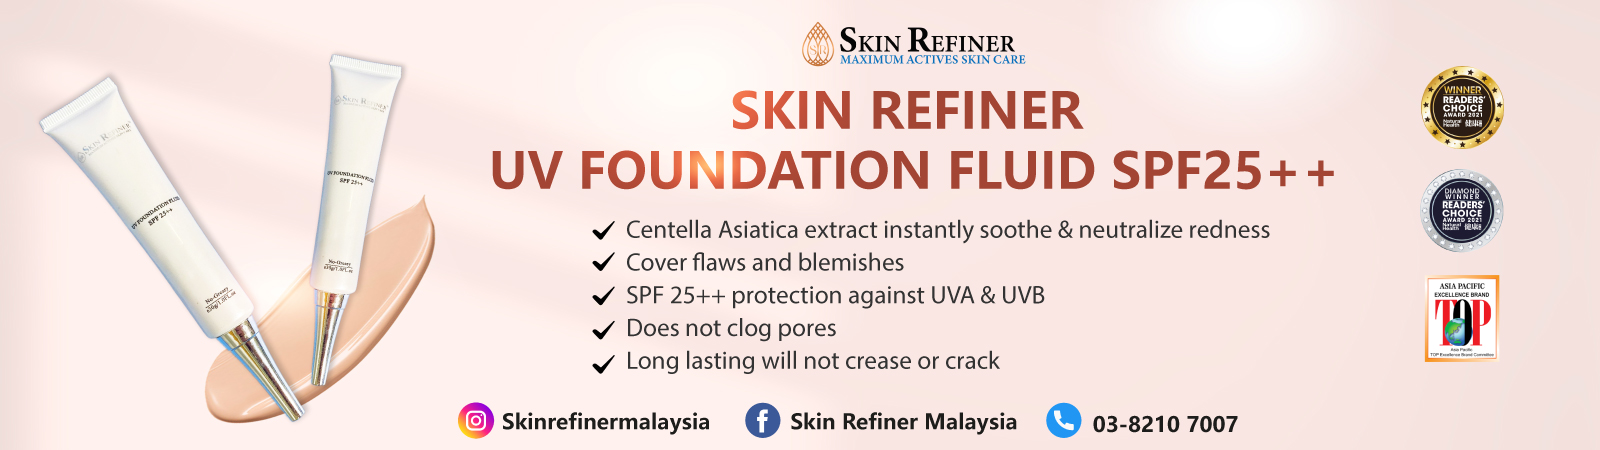 Skin Refiner UV Foundation Fluid SPF25++